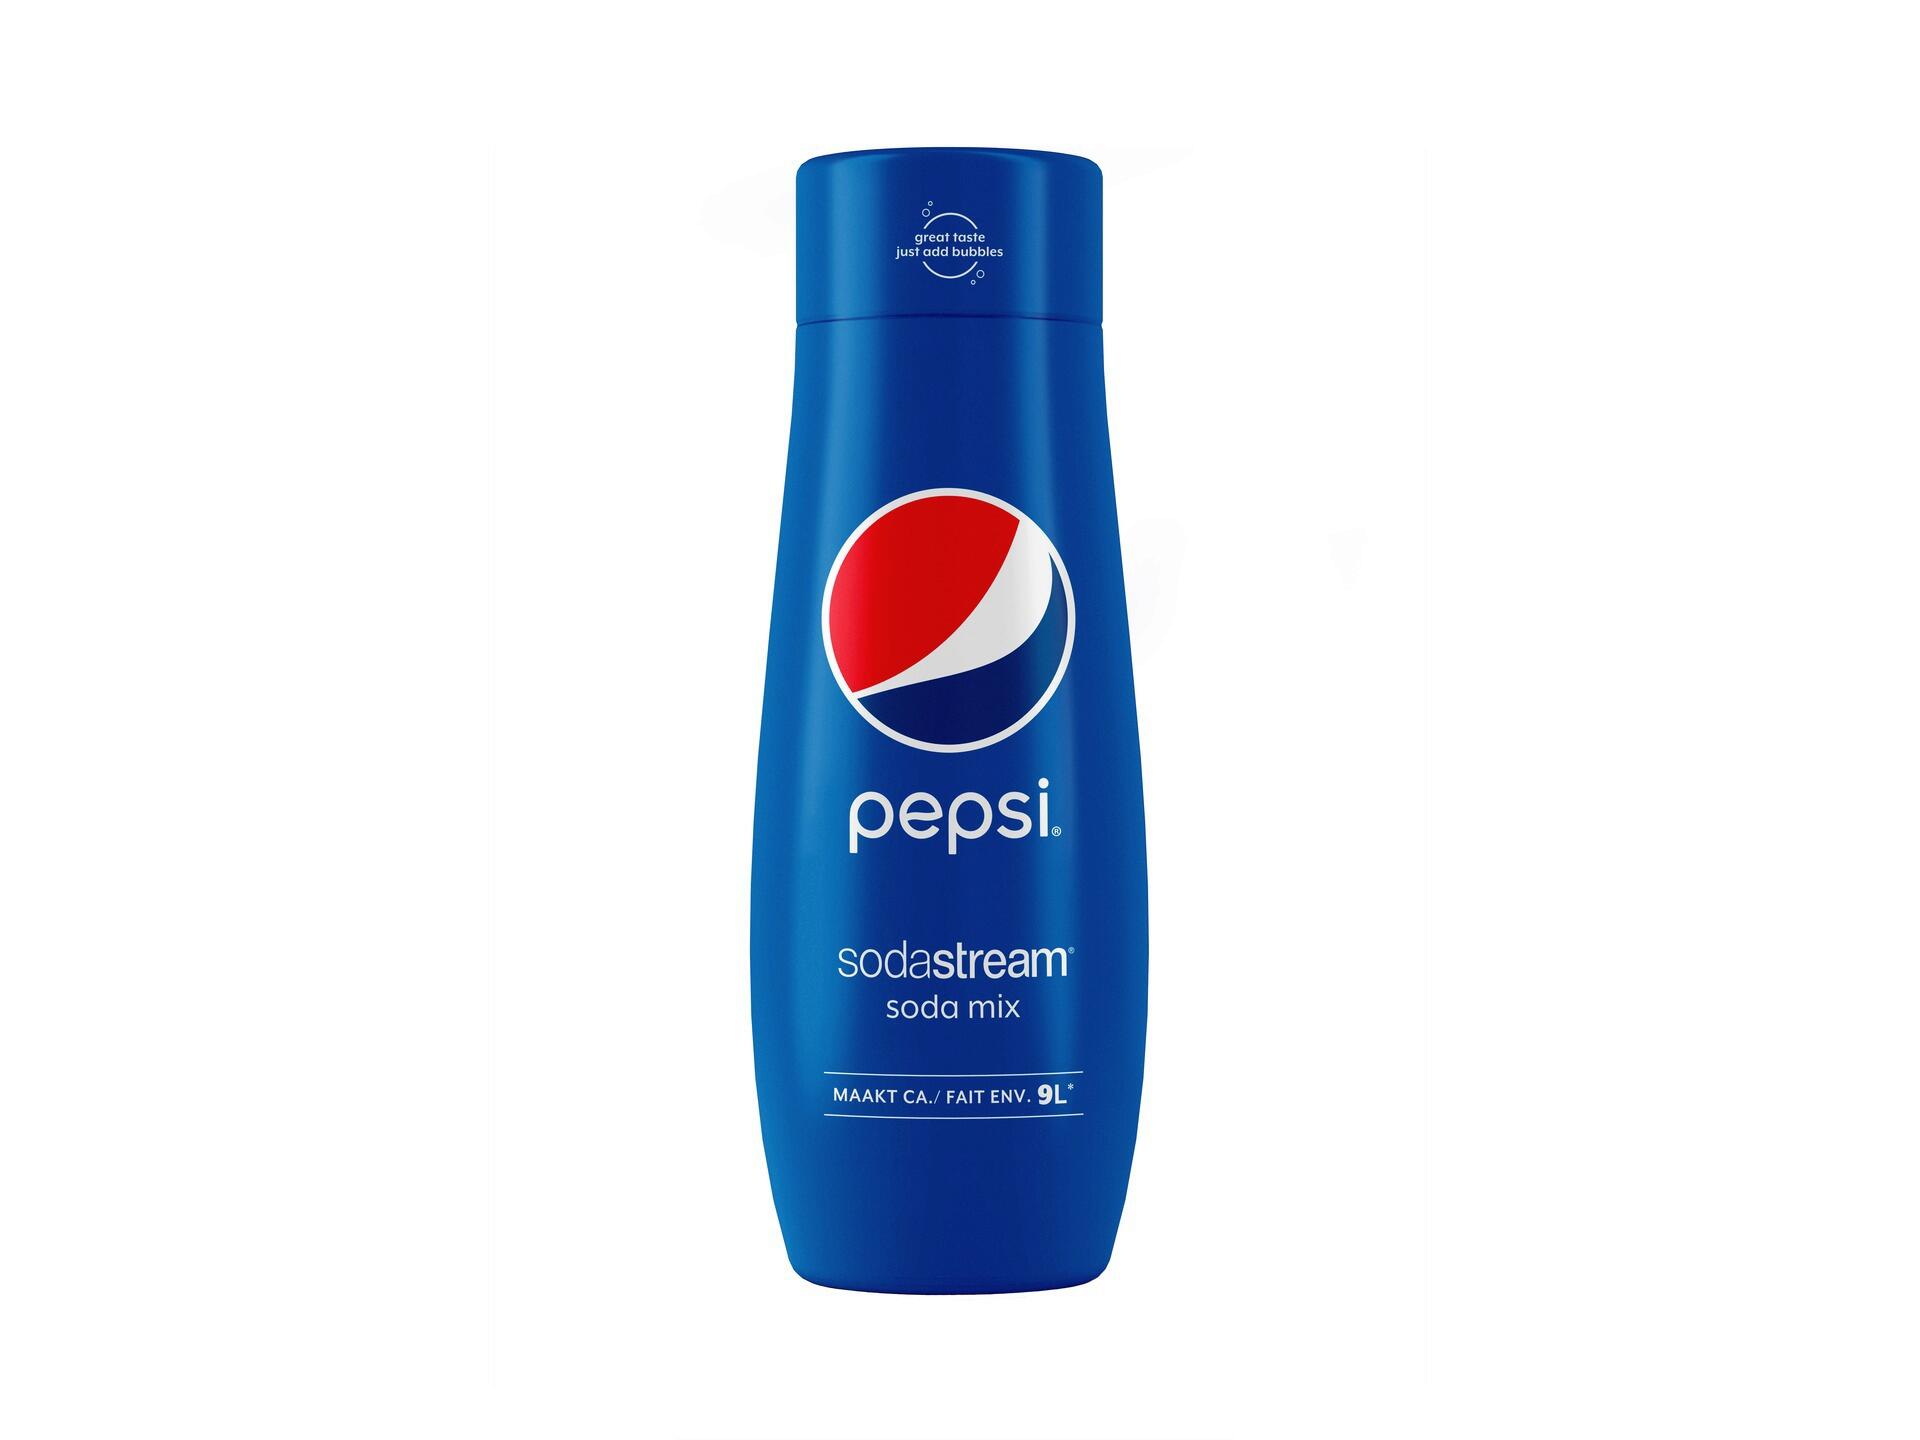 SodaStream Pepsi sirop 440ml